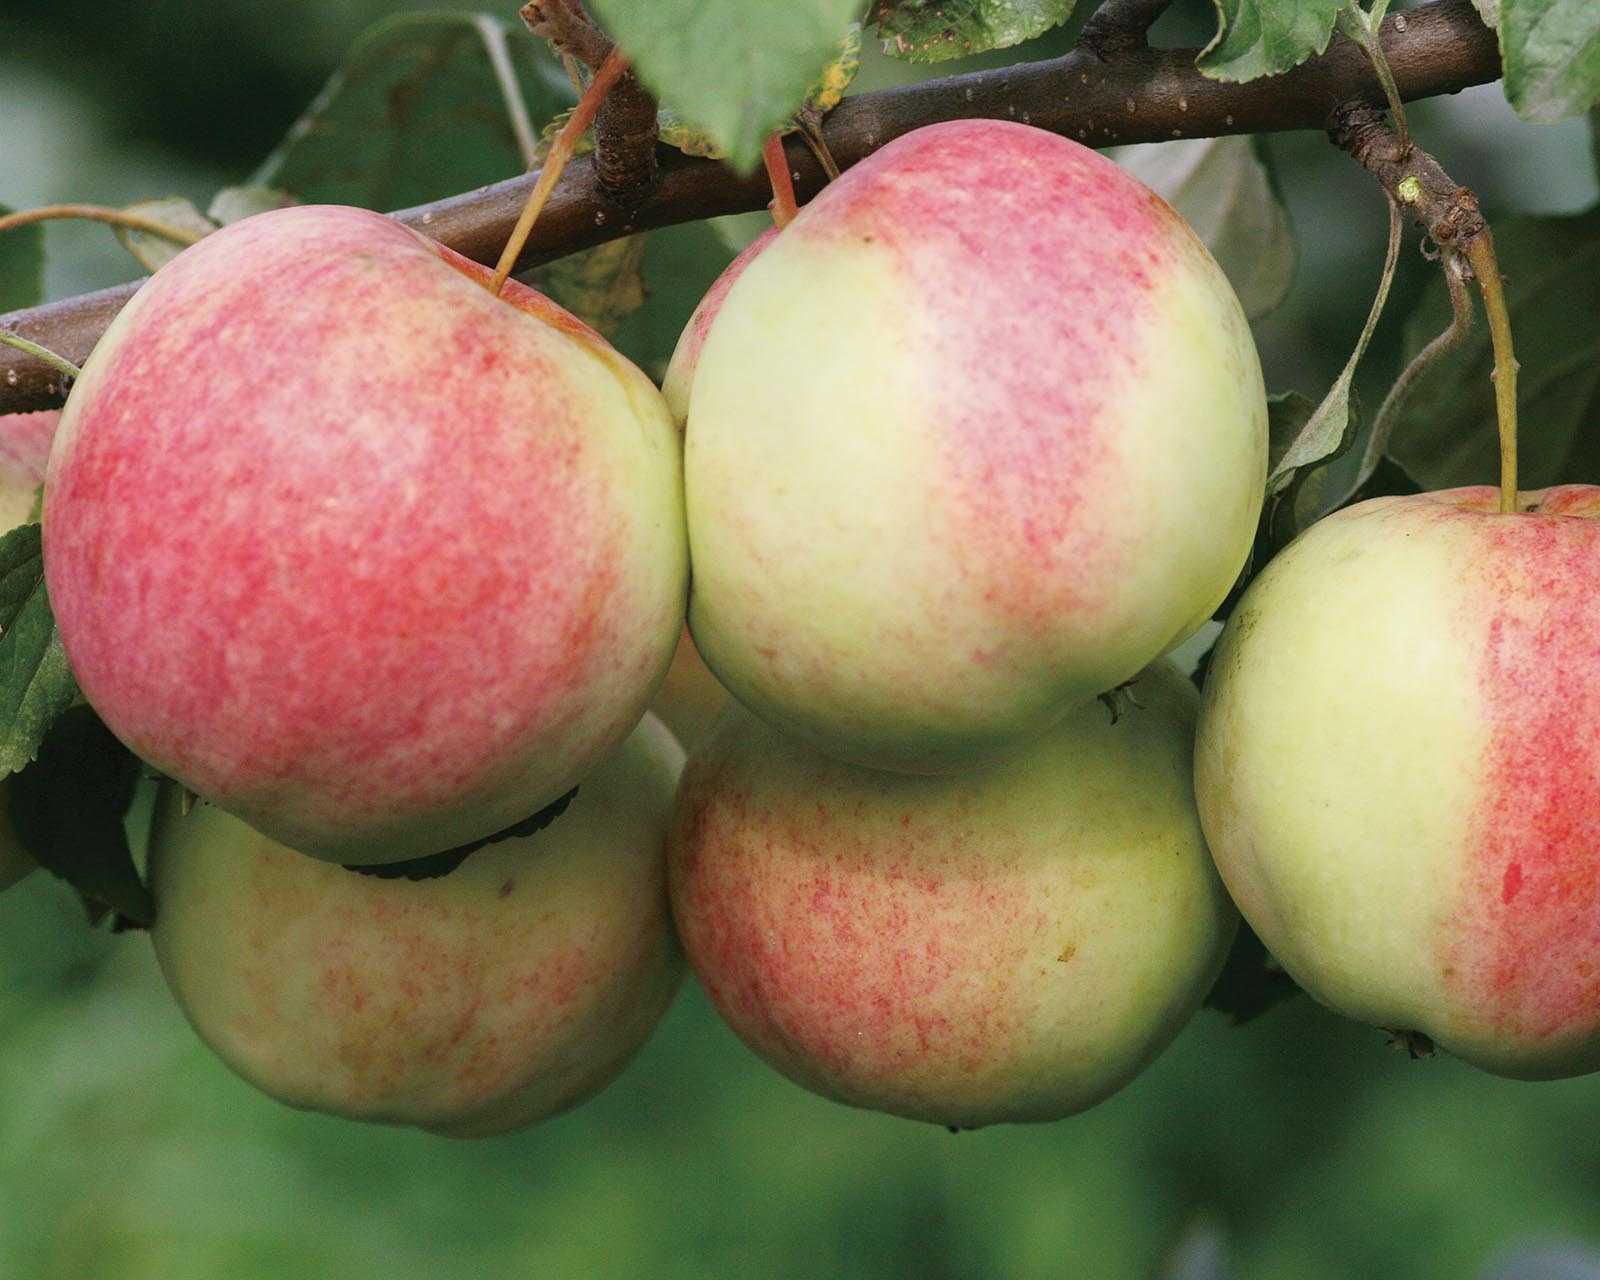 Какие существуют хорошие сорта яблонь для украины?